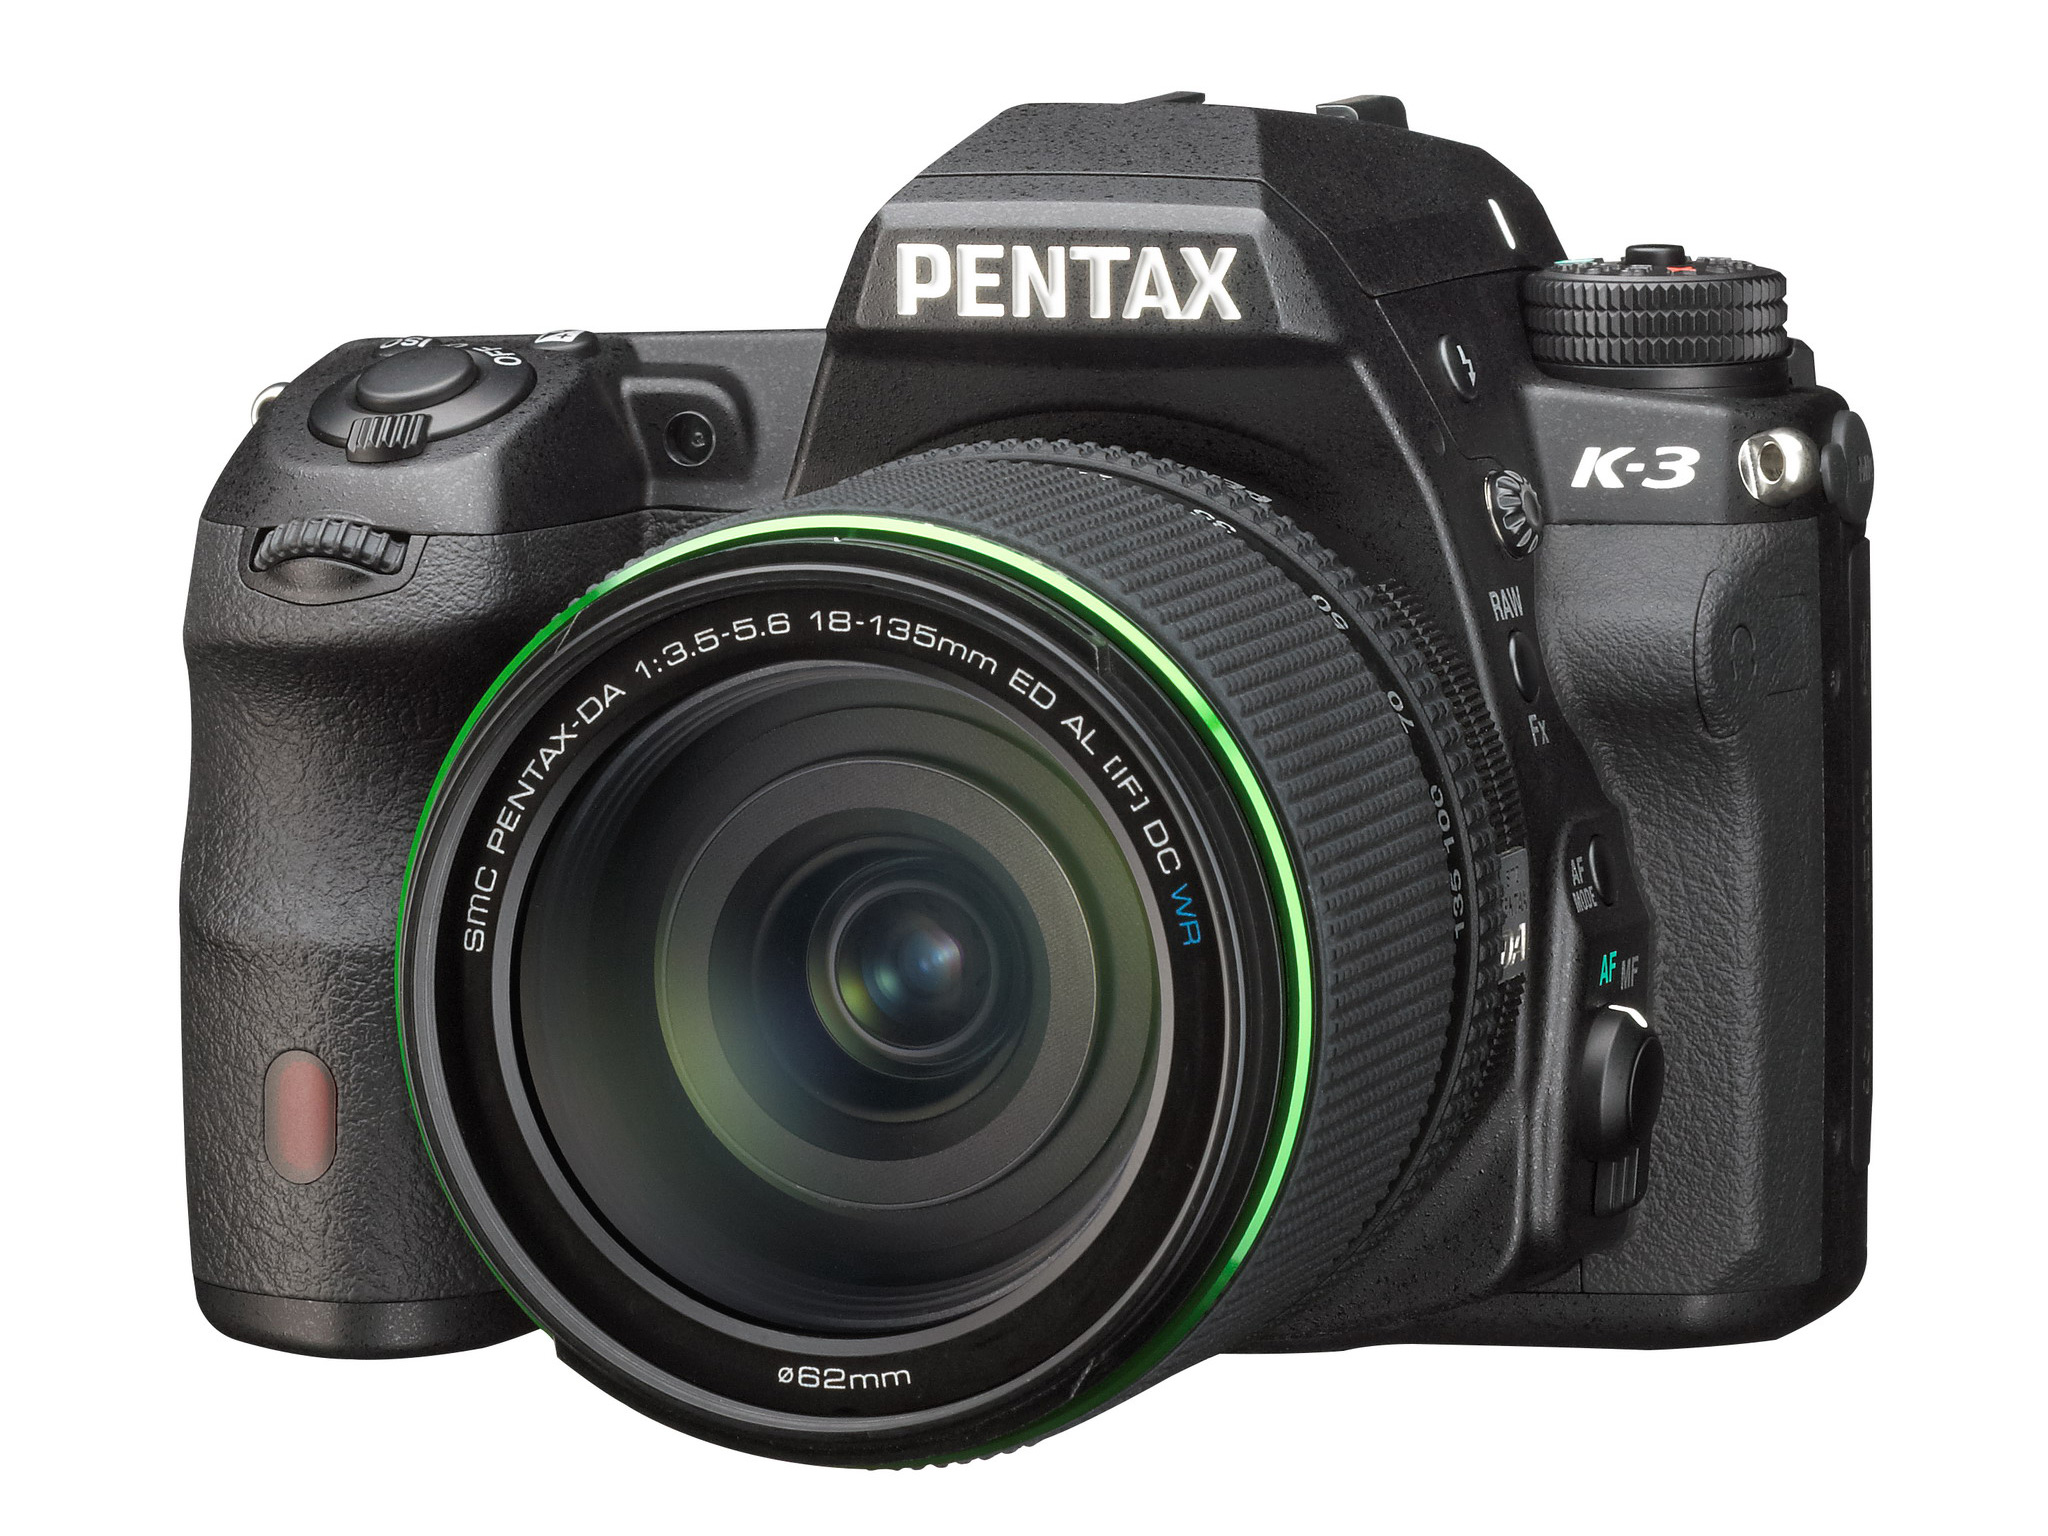 Itt a Pentax K-3, az eddigi csúcsmodell